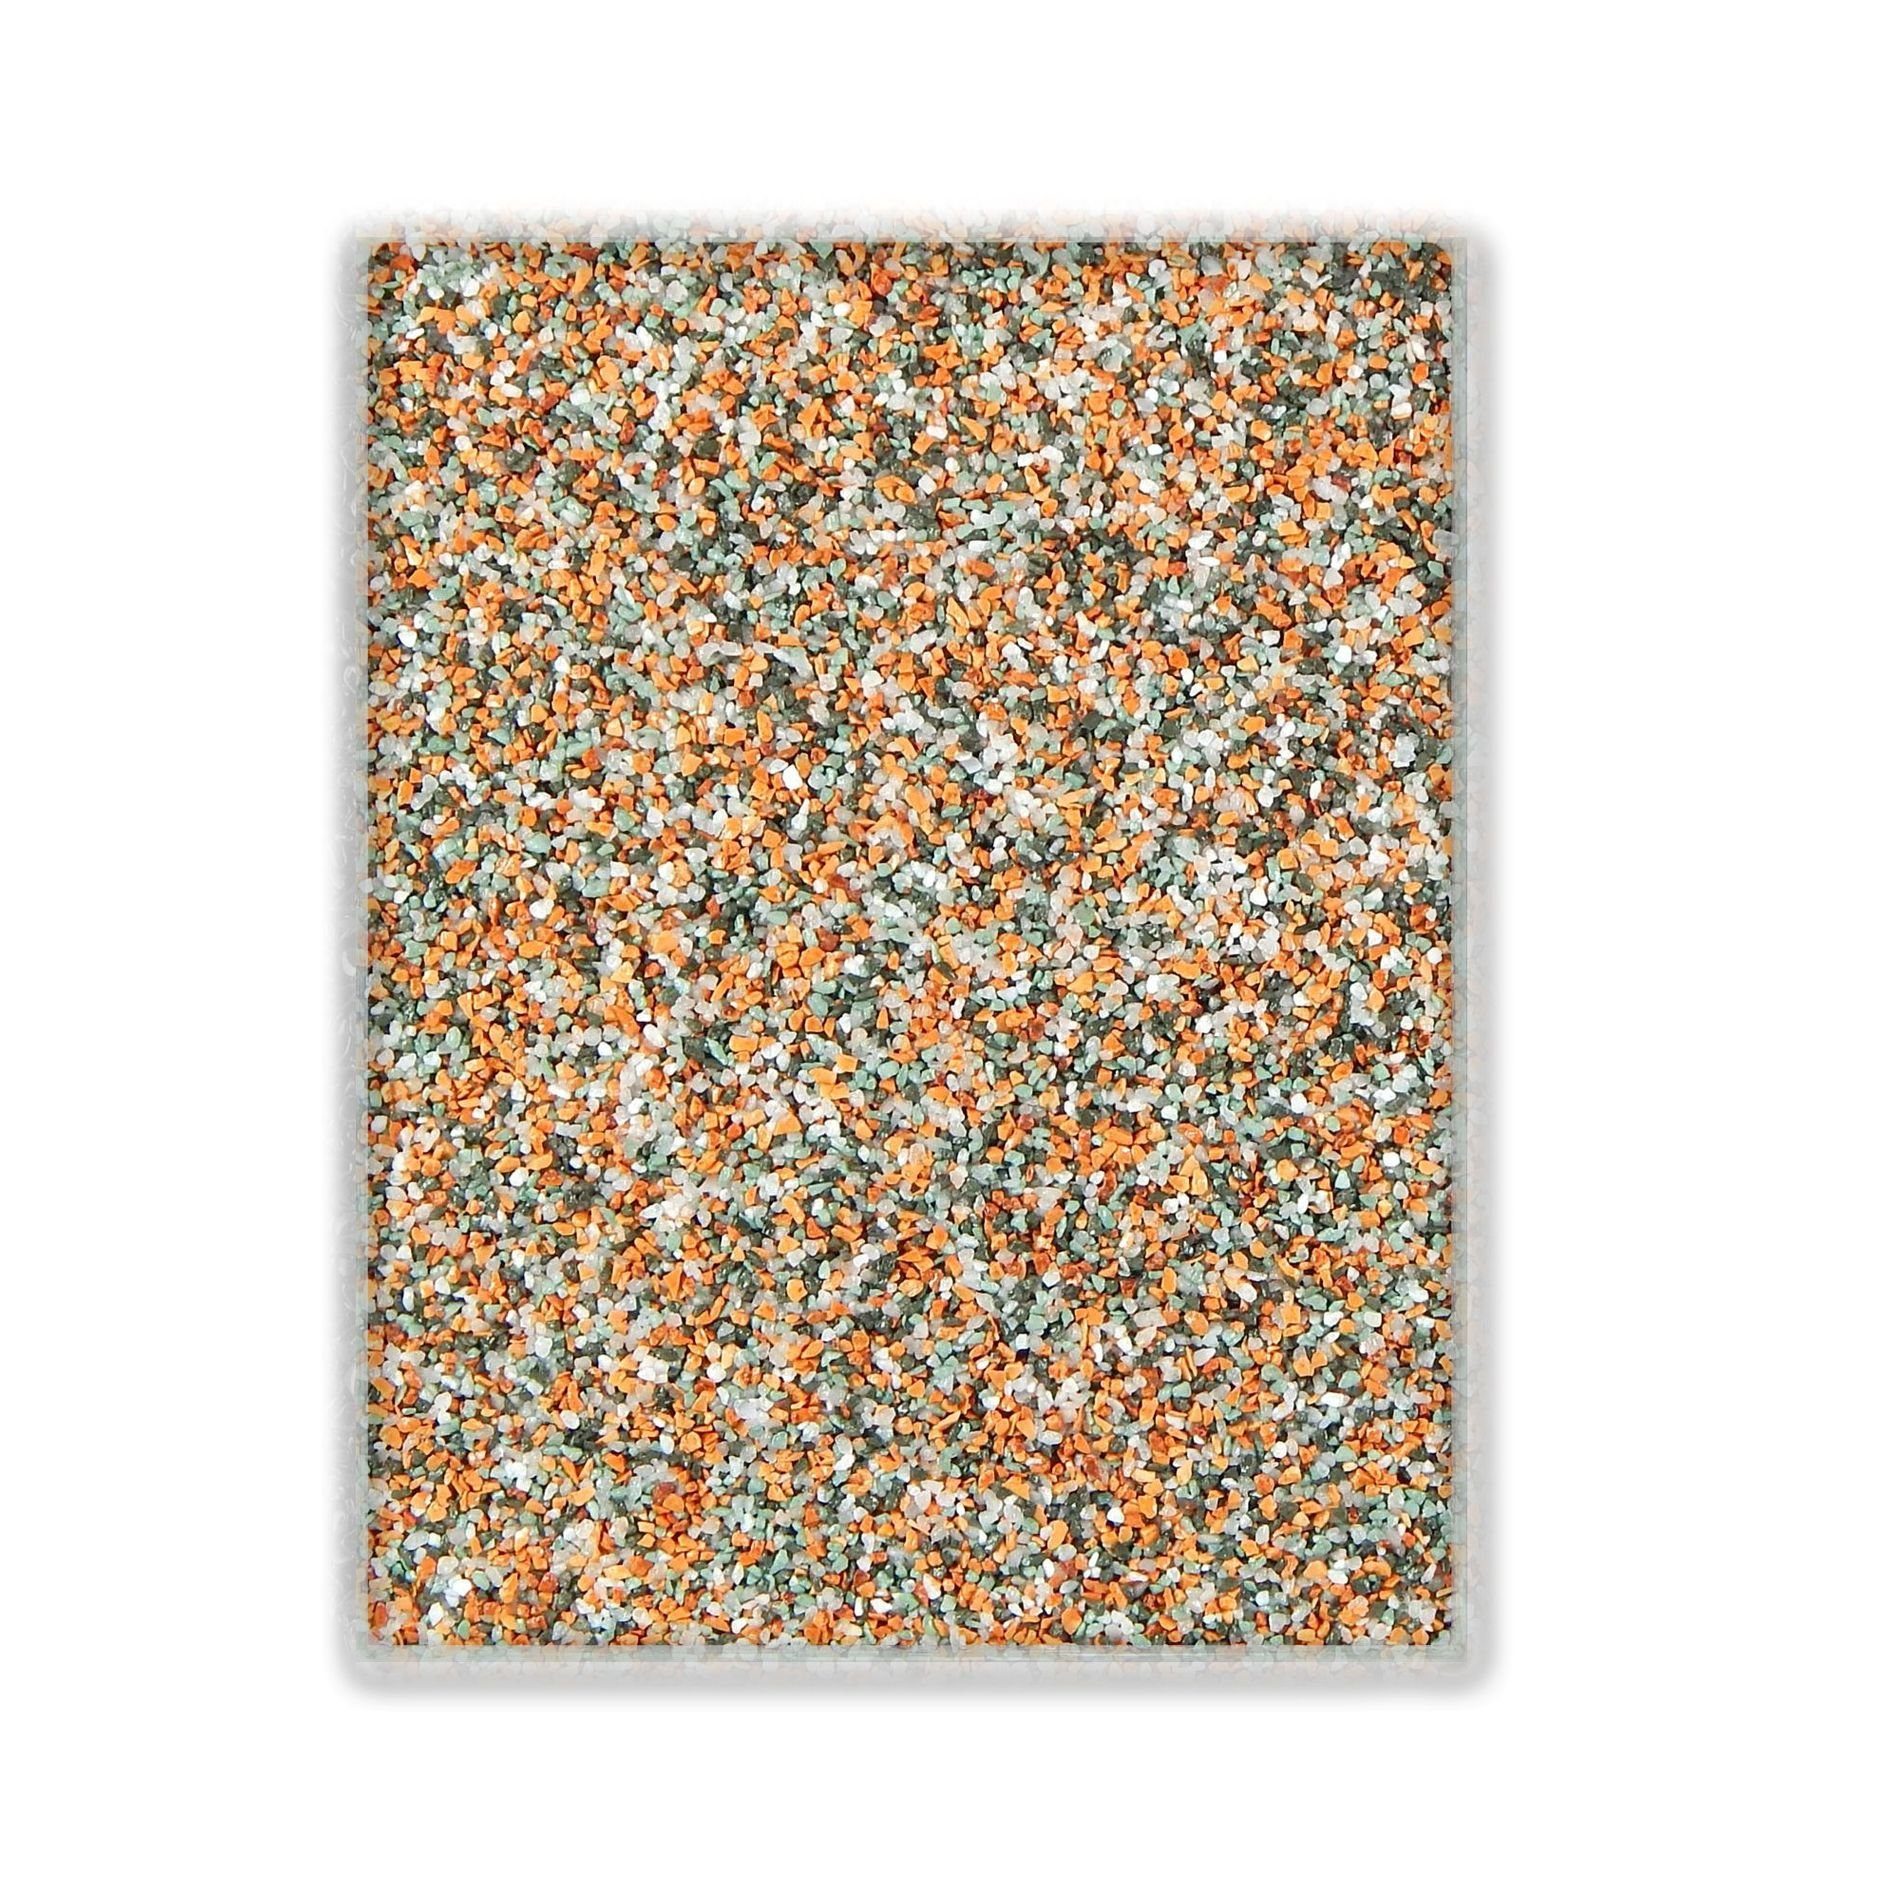 Terralith® Designboden Farbmuster Kompaktboden -mix bologne-, Originalware aus der Charge, die wir in diesem Moment im Abverkauf haben.